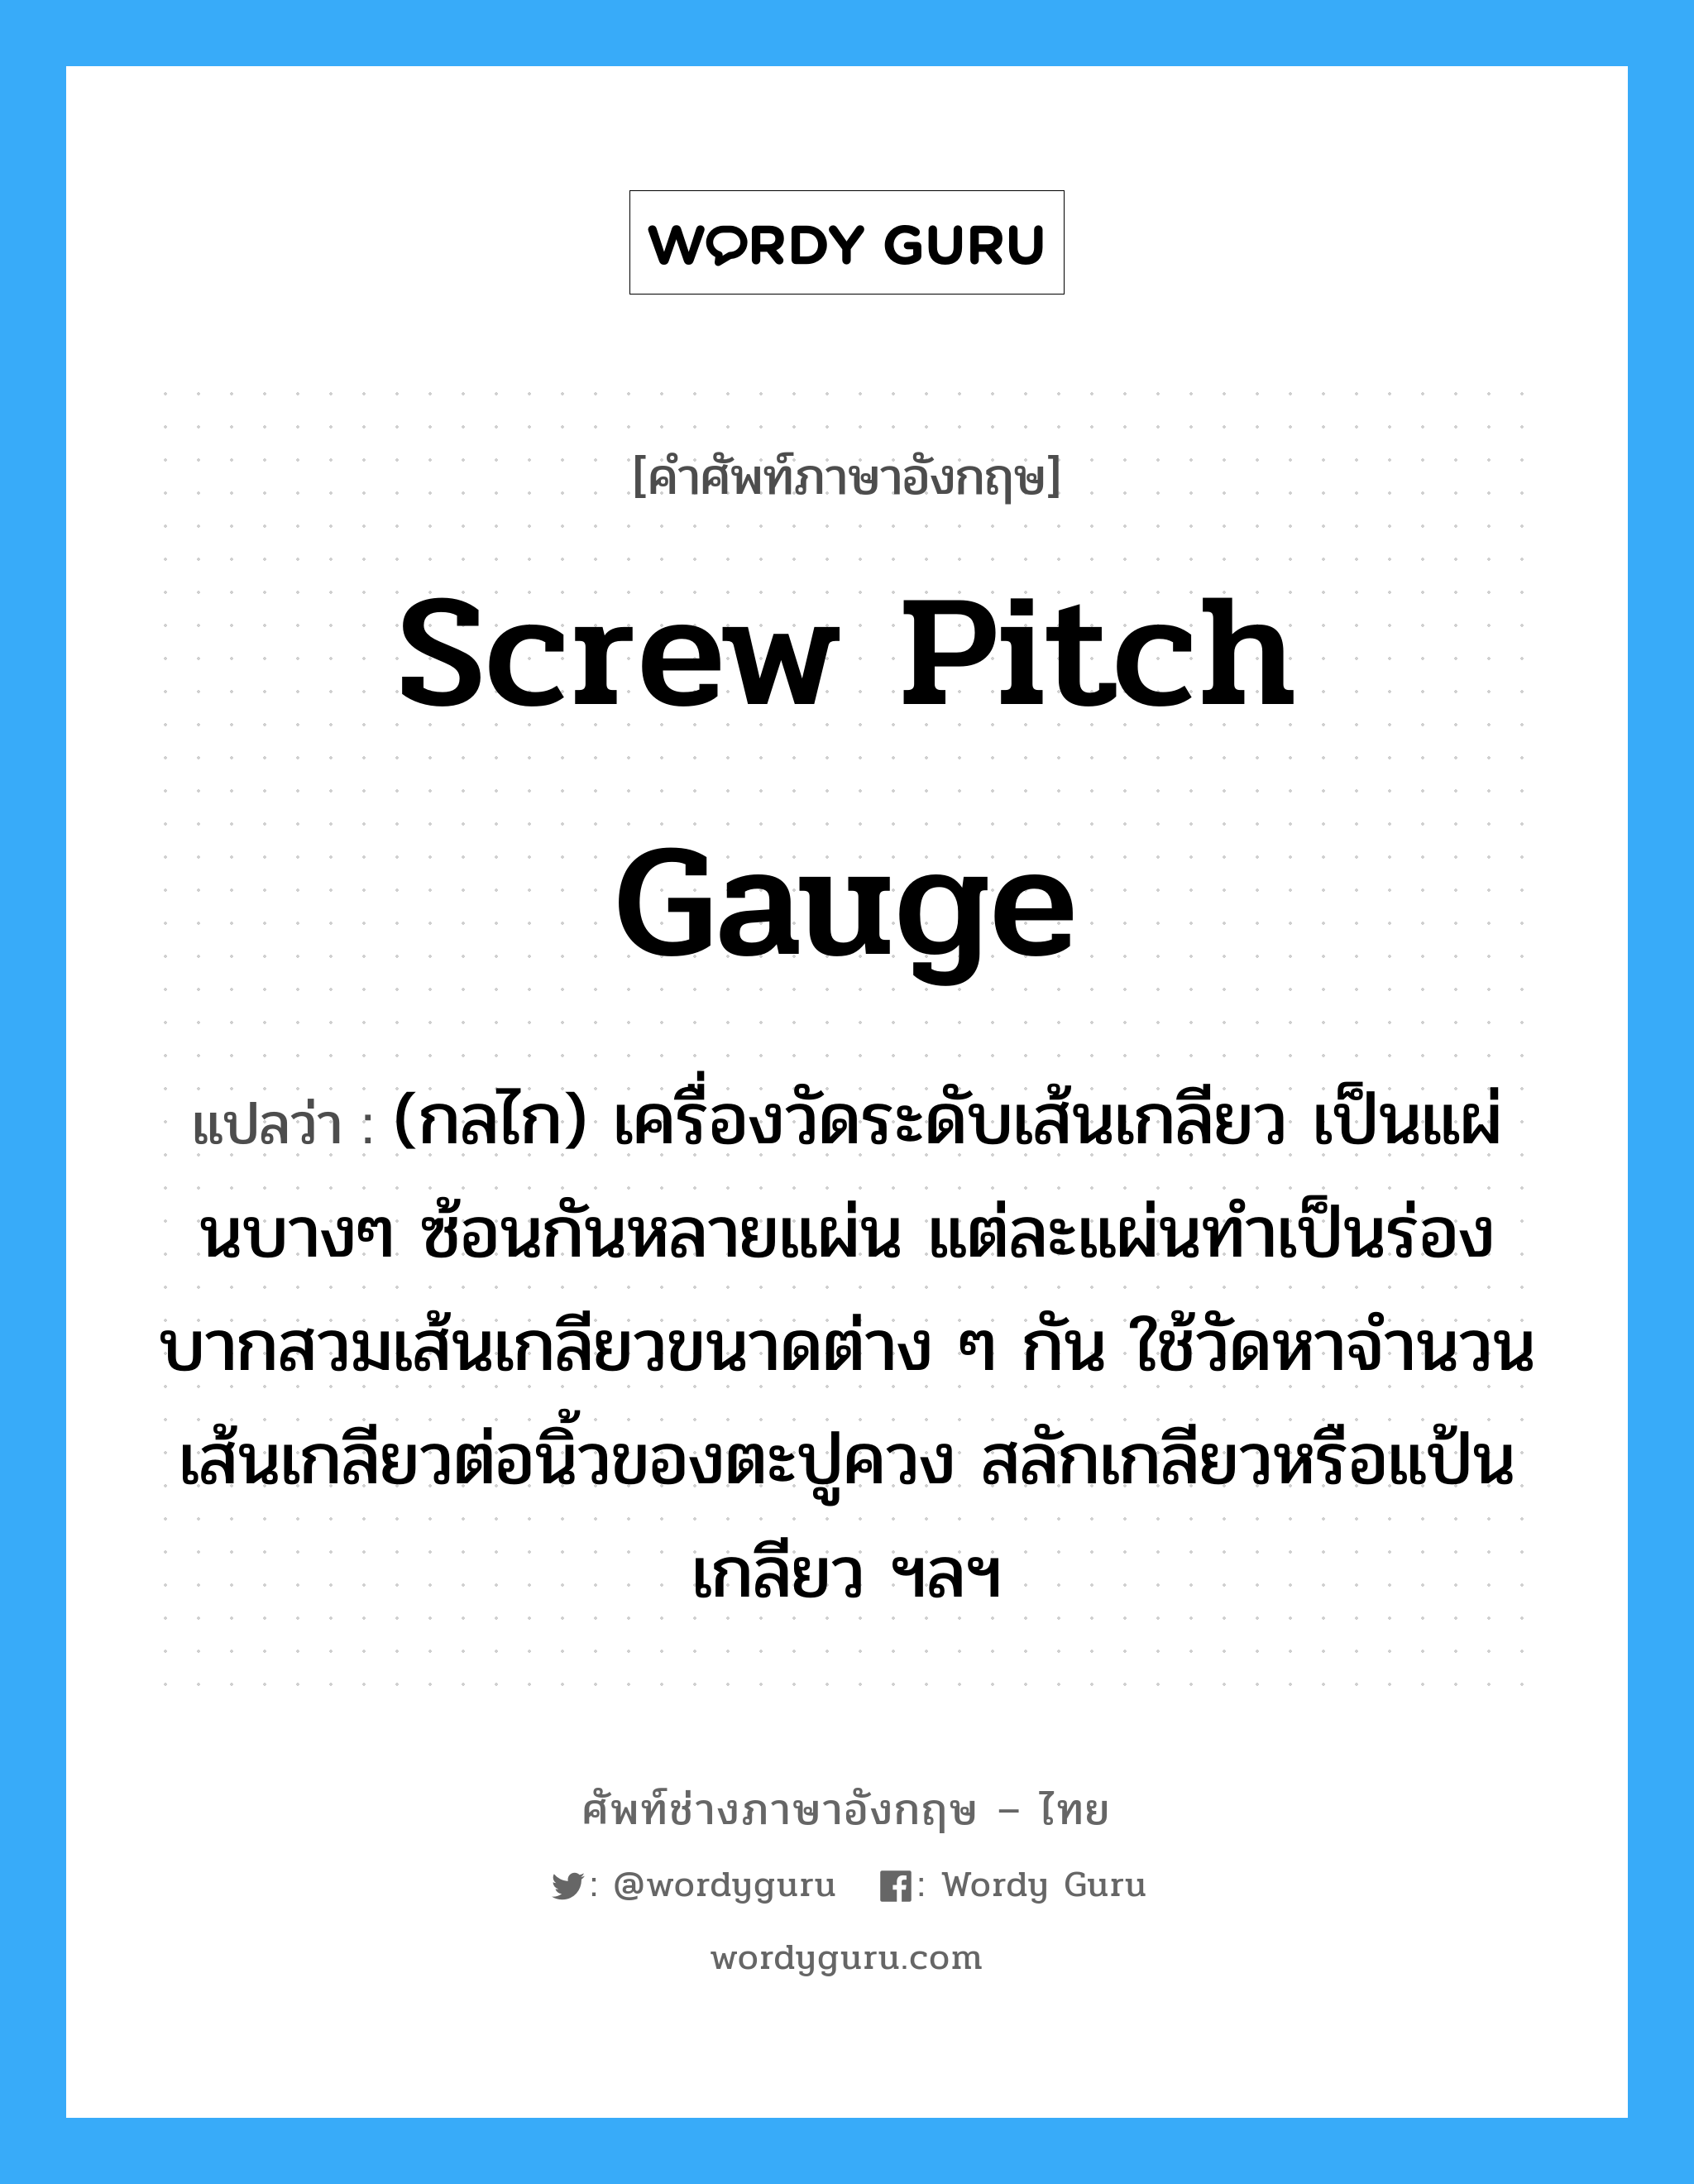 screw pitch gauge แปลว่า?, คำศัพท์ช่างภาษาอังกฤษ - ไทย screw pitch gauge คำศัพท์ภาษาอังกฤษ screw pitch gauge แปลว่า (กลไก) เครื่องวัดระดับเส้นเกลียว เป็นแผ่นบางๆ ซ้อนกันหลายแผ่น แต่ละแผ่นทำเป็นร่องบากสวมเส้นเกลียวขนาดต่าง ๆ กัน ใช้วัดหาจำนวนเส้นเกลียวต่อนิ้วของตะปูควง สลักเกลียวหรือแป้นเกลียว ฯลฯ